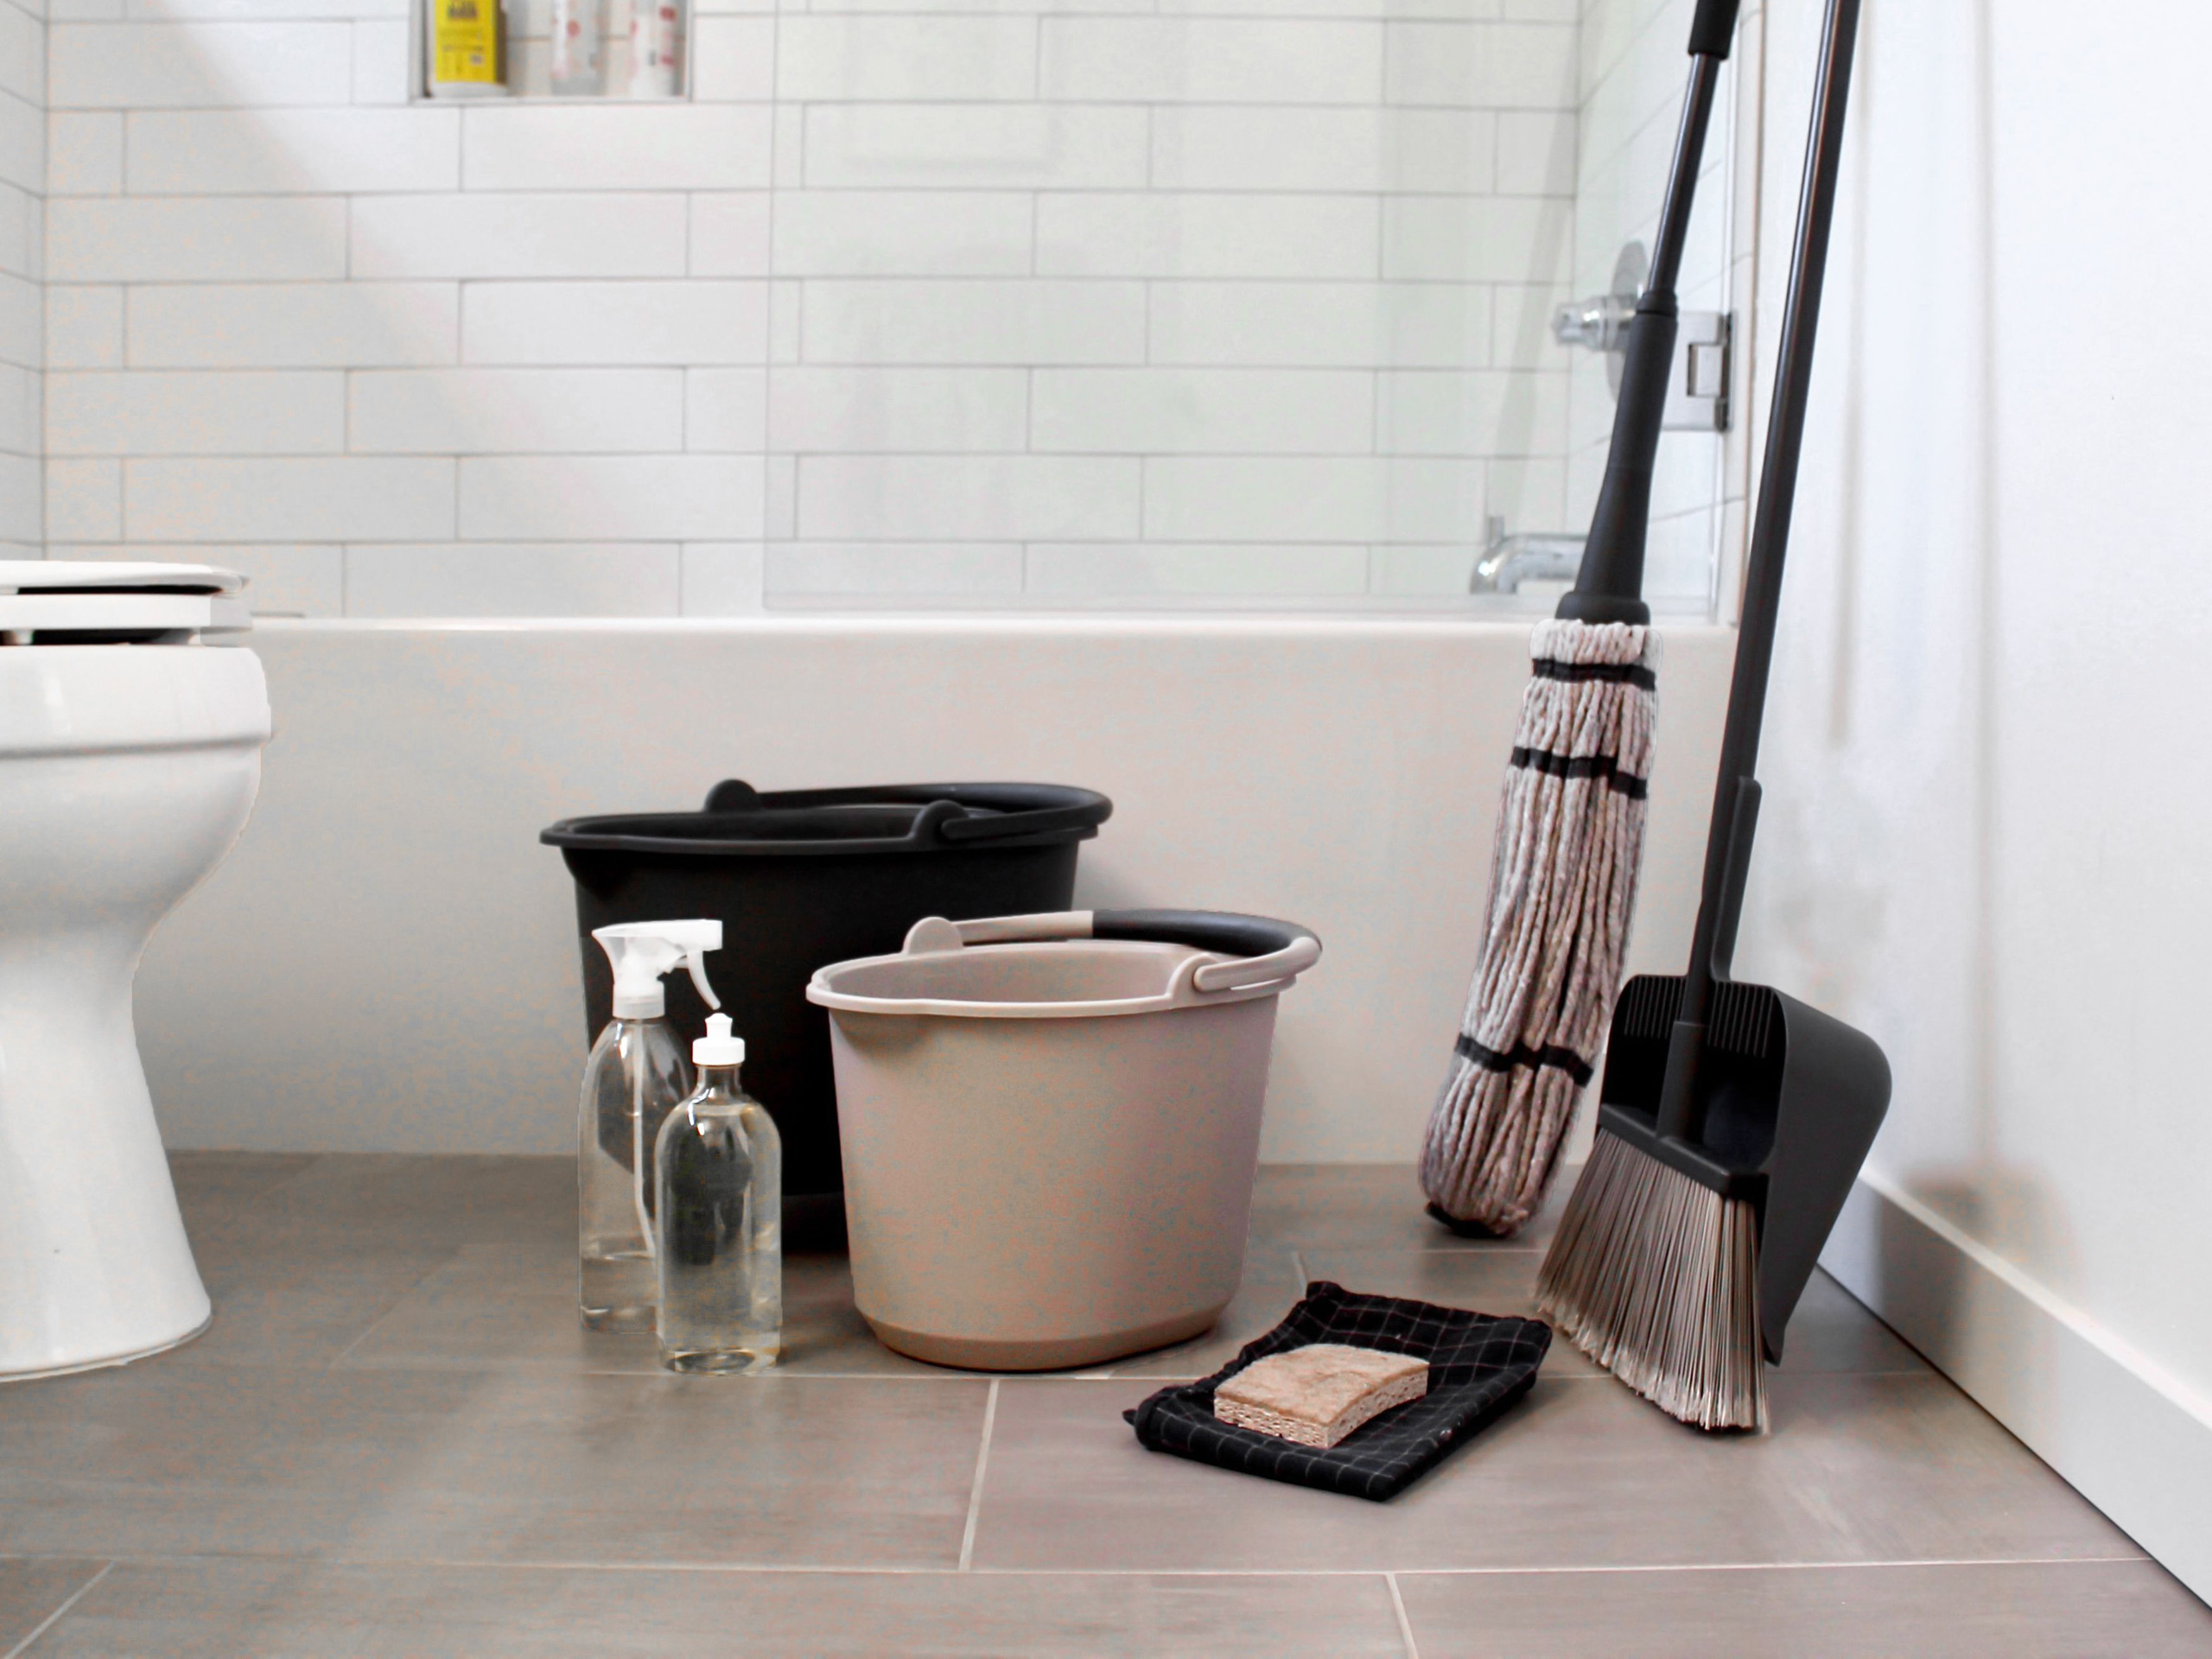 Dùng 5 món đồ này khi vệ sinh nhà cửa, vừa sạch bóng từng ngõ ngách lại diệt khuẩn, đảm bảo cho sức khỏe cho cả gia đình - Ảnh 4.